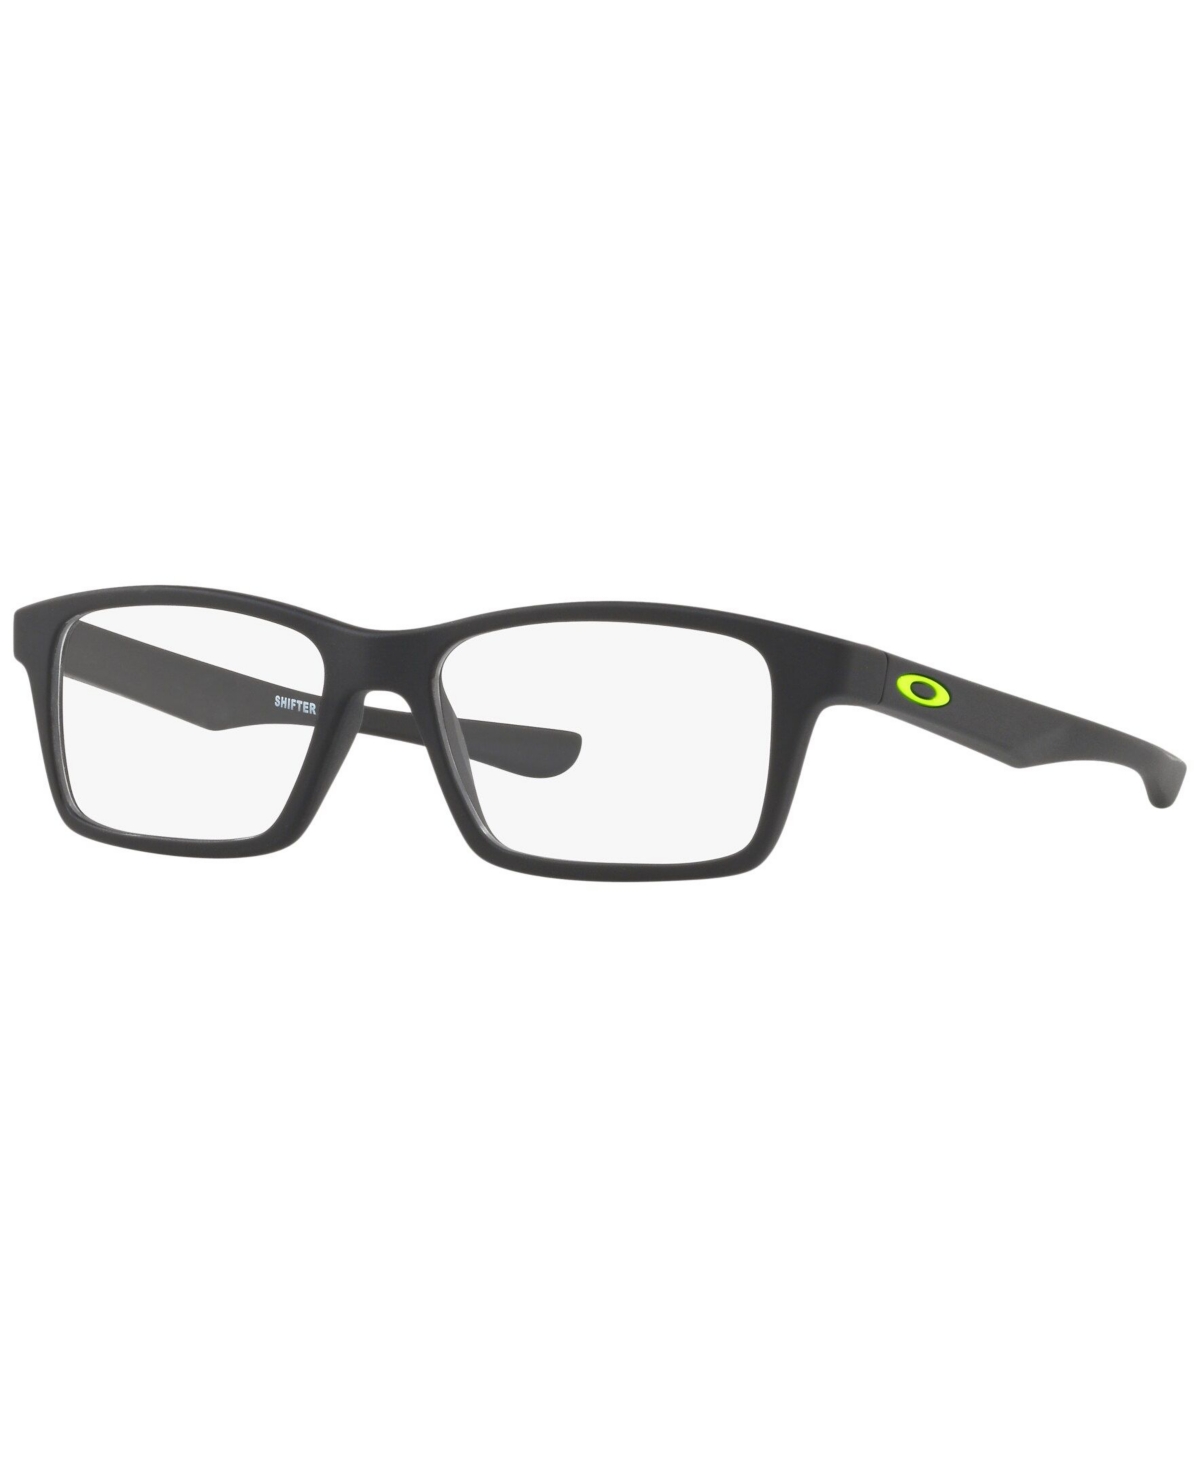 OY8002-0349 Child Square Eyeglasses - Black